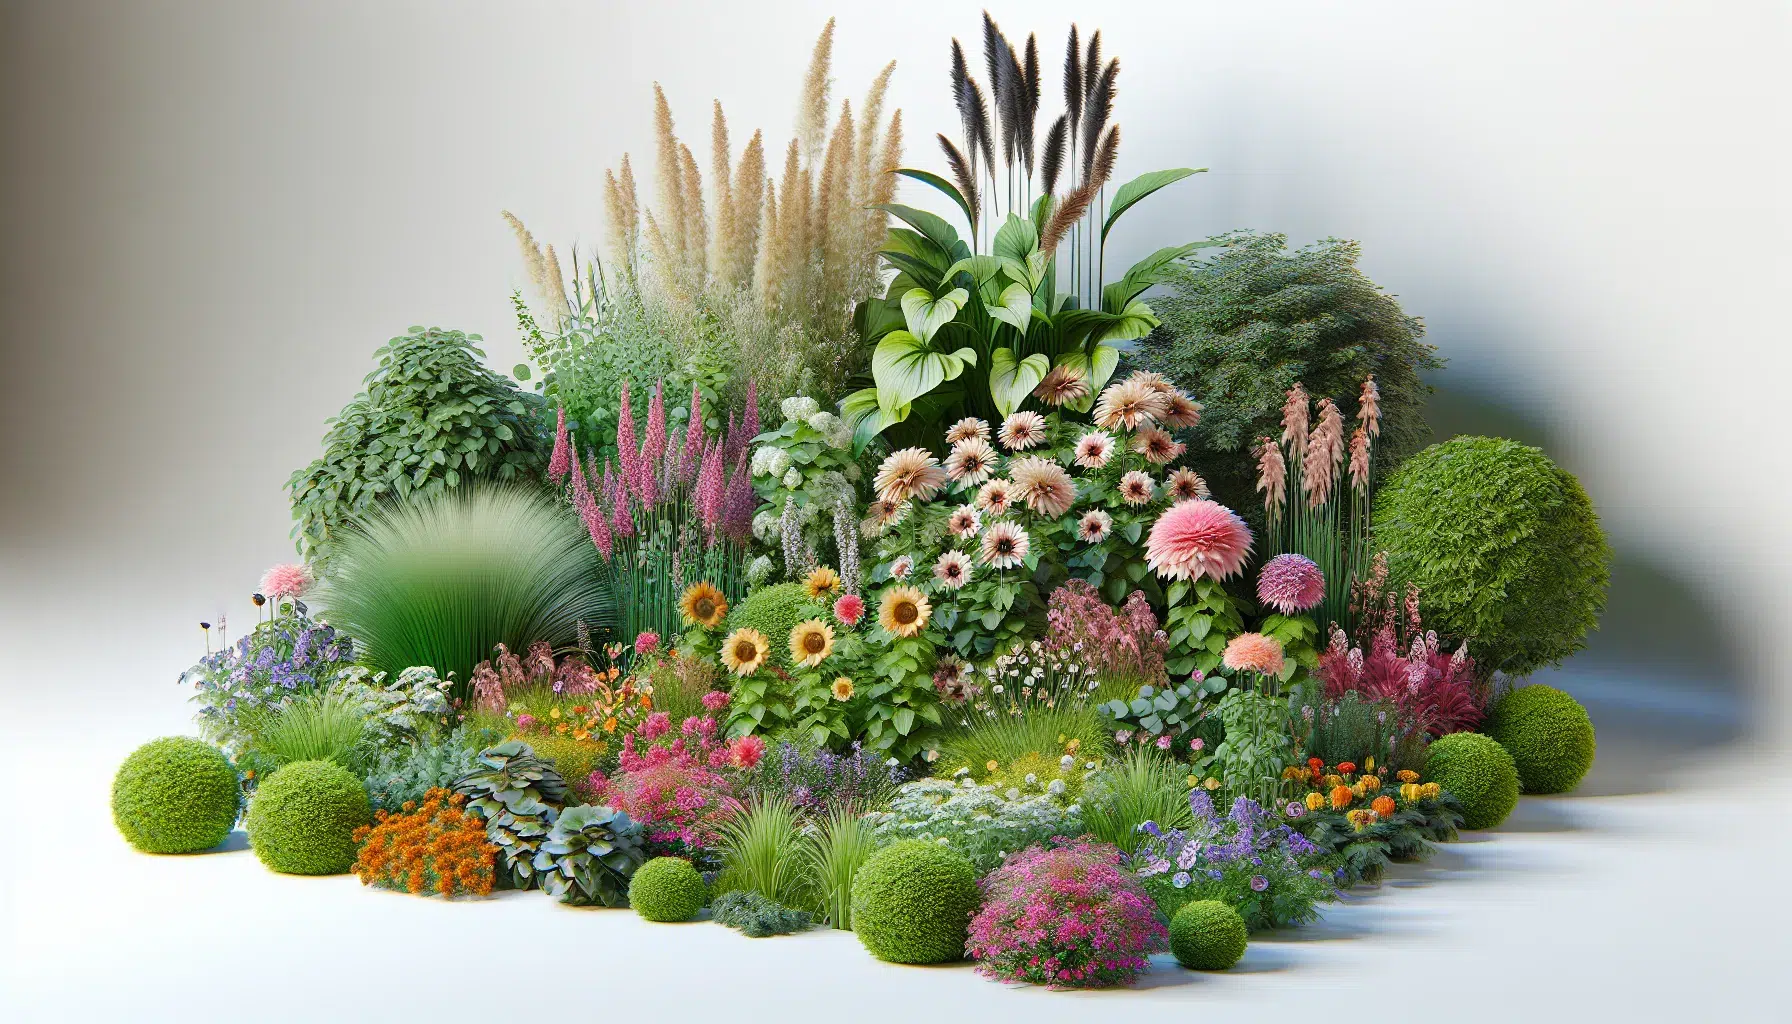 Selección de plantas ornamentales ideales para embellecer tu jardín.